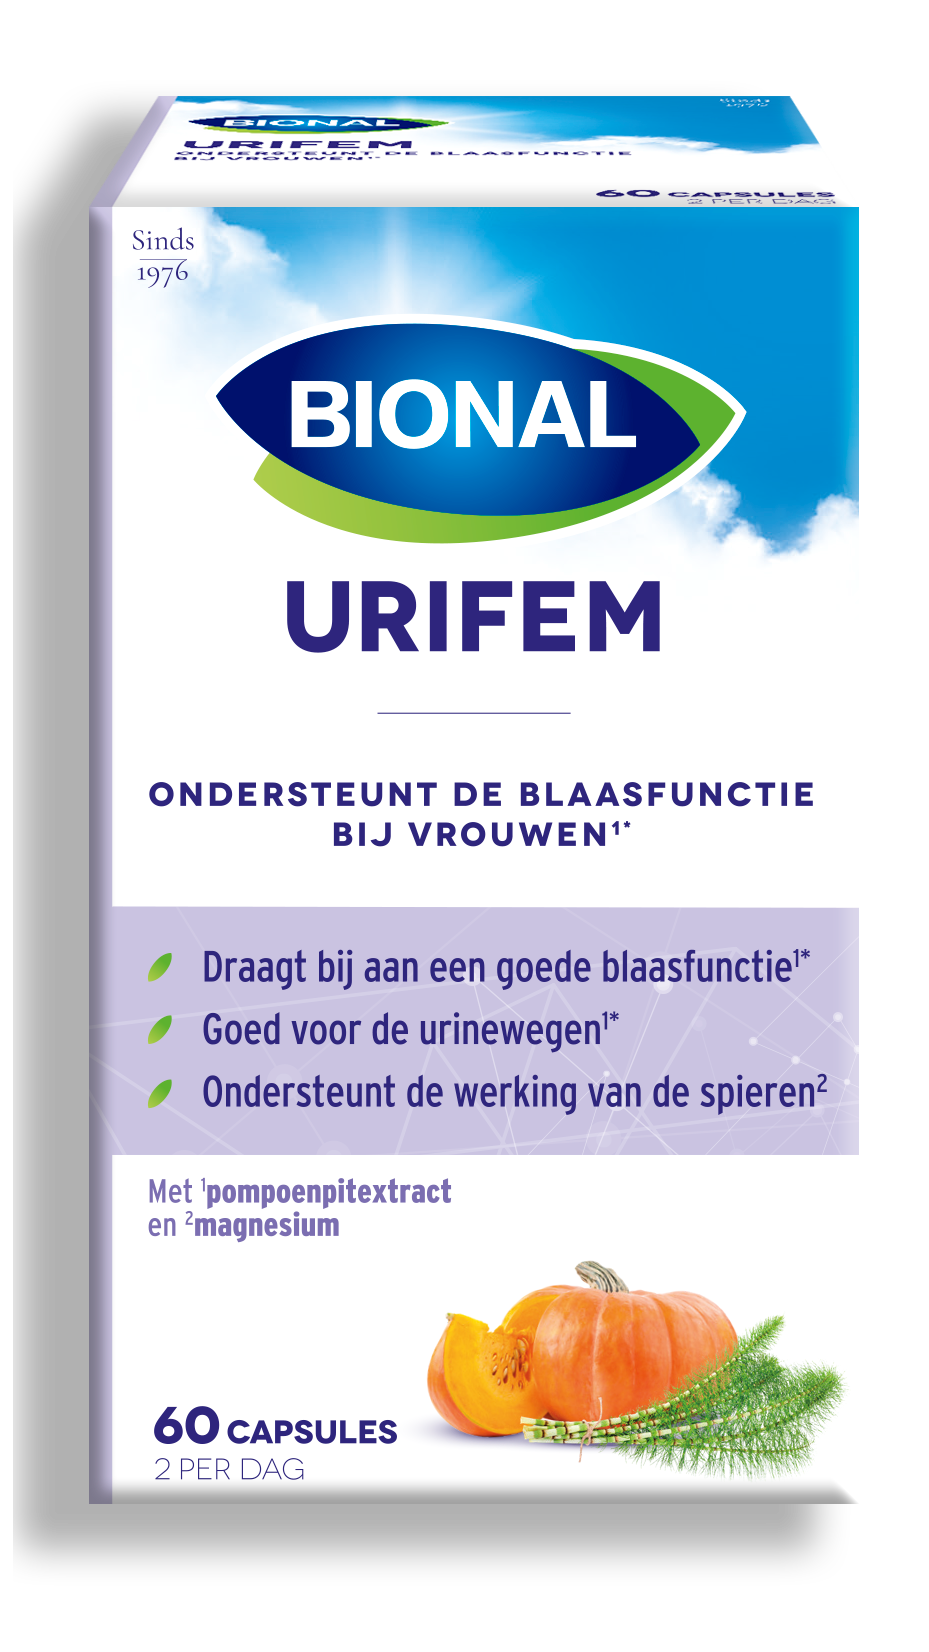 Bional Urifem